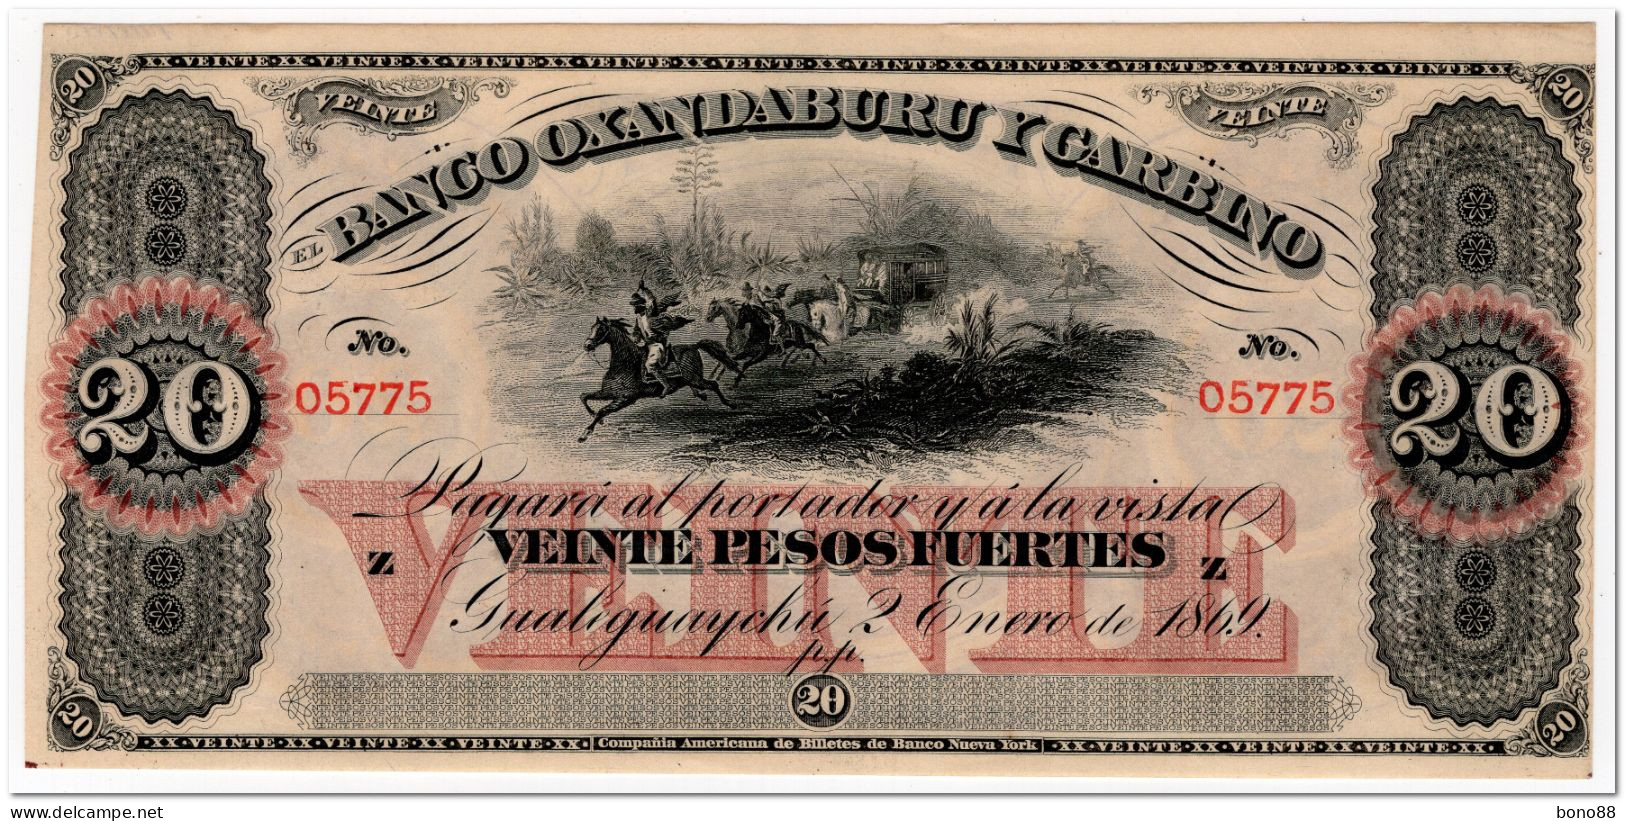 ARGENTINA,BANCO OXANDABURU Y GARBINO,20 PESOS FUERTES,1869,P.S1794,AU-UNC - Argentinië